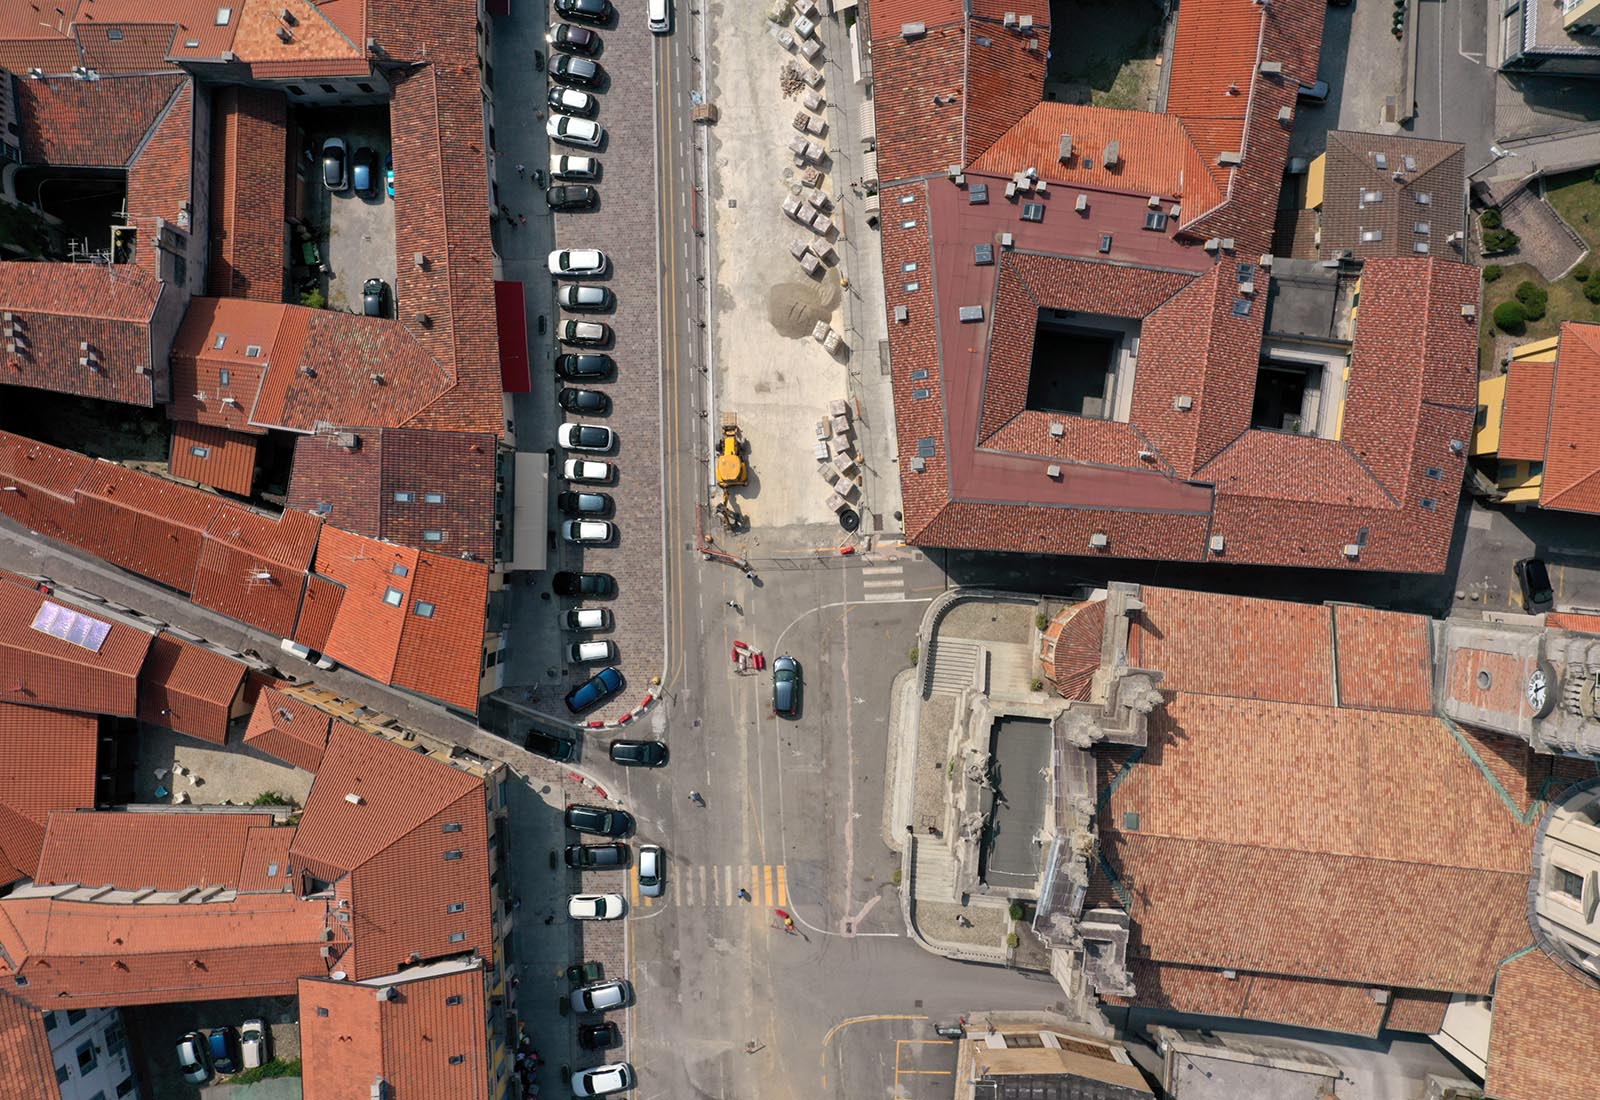 Piazza Libertà in Appiano Gentile - The construction site